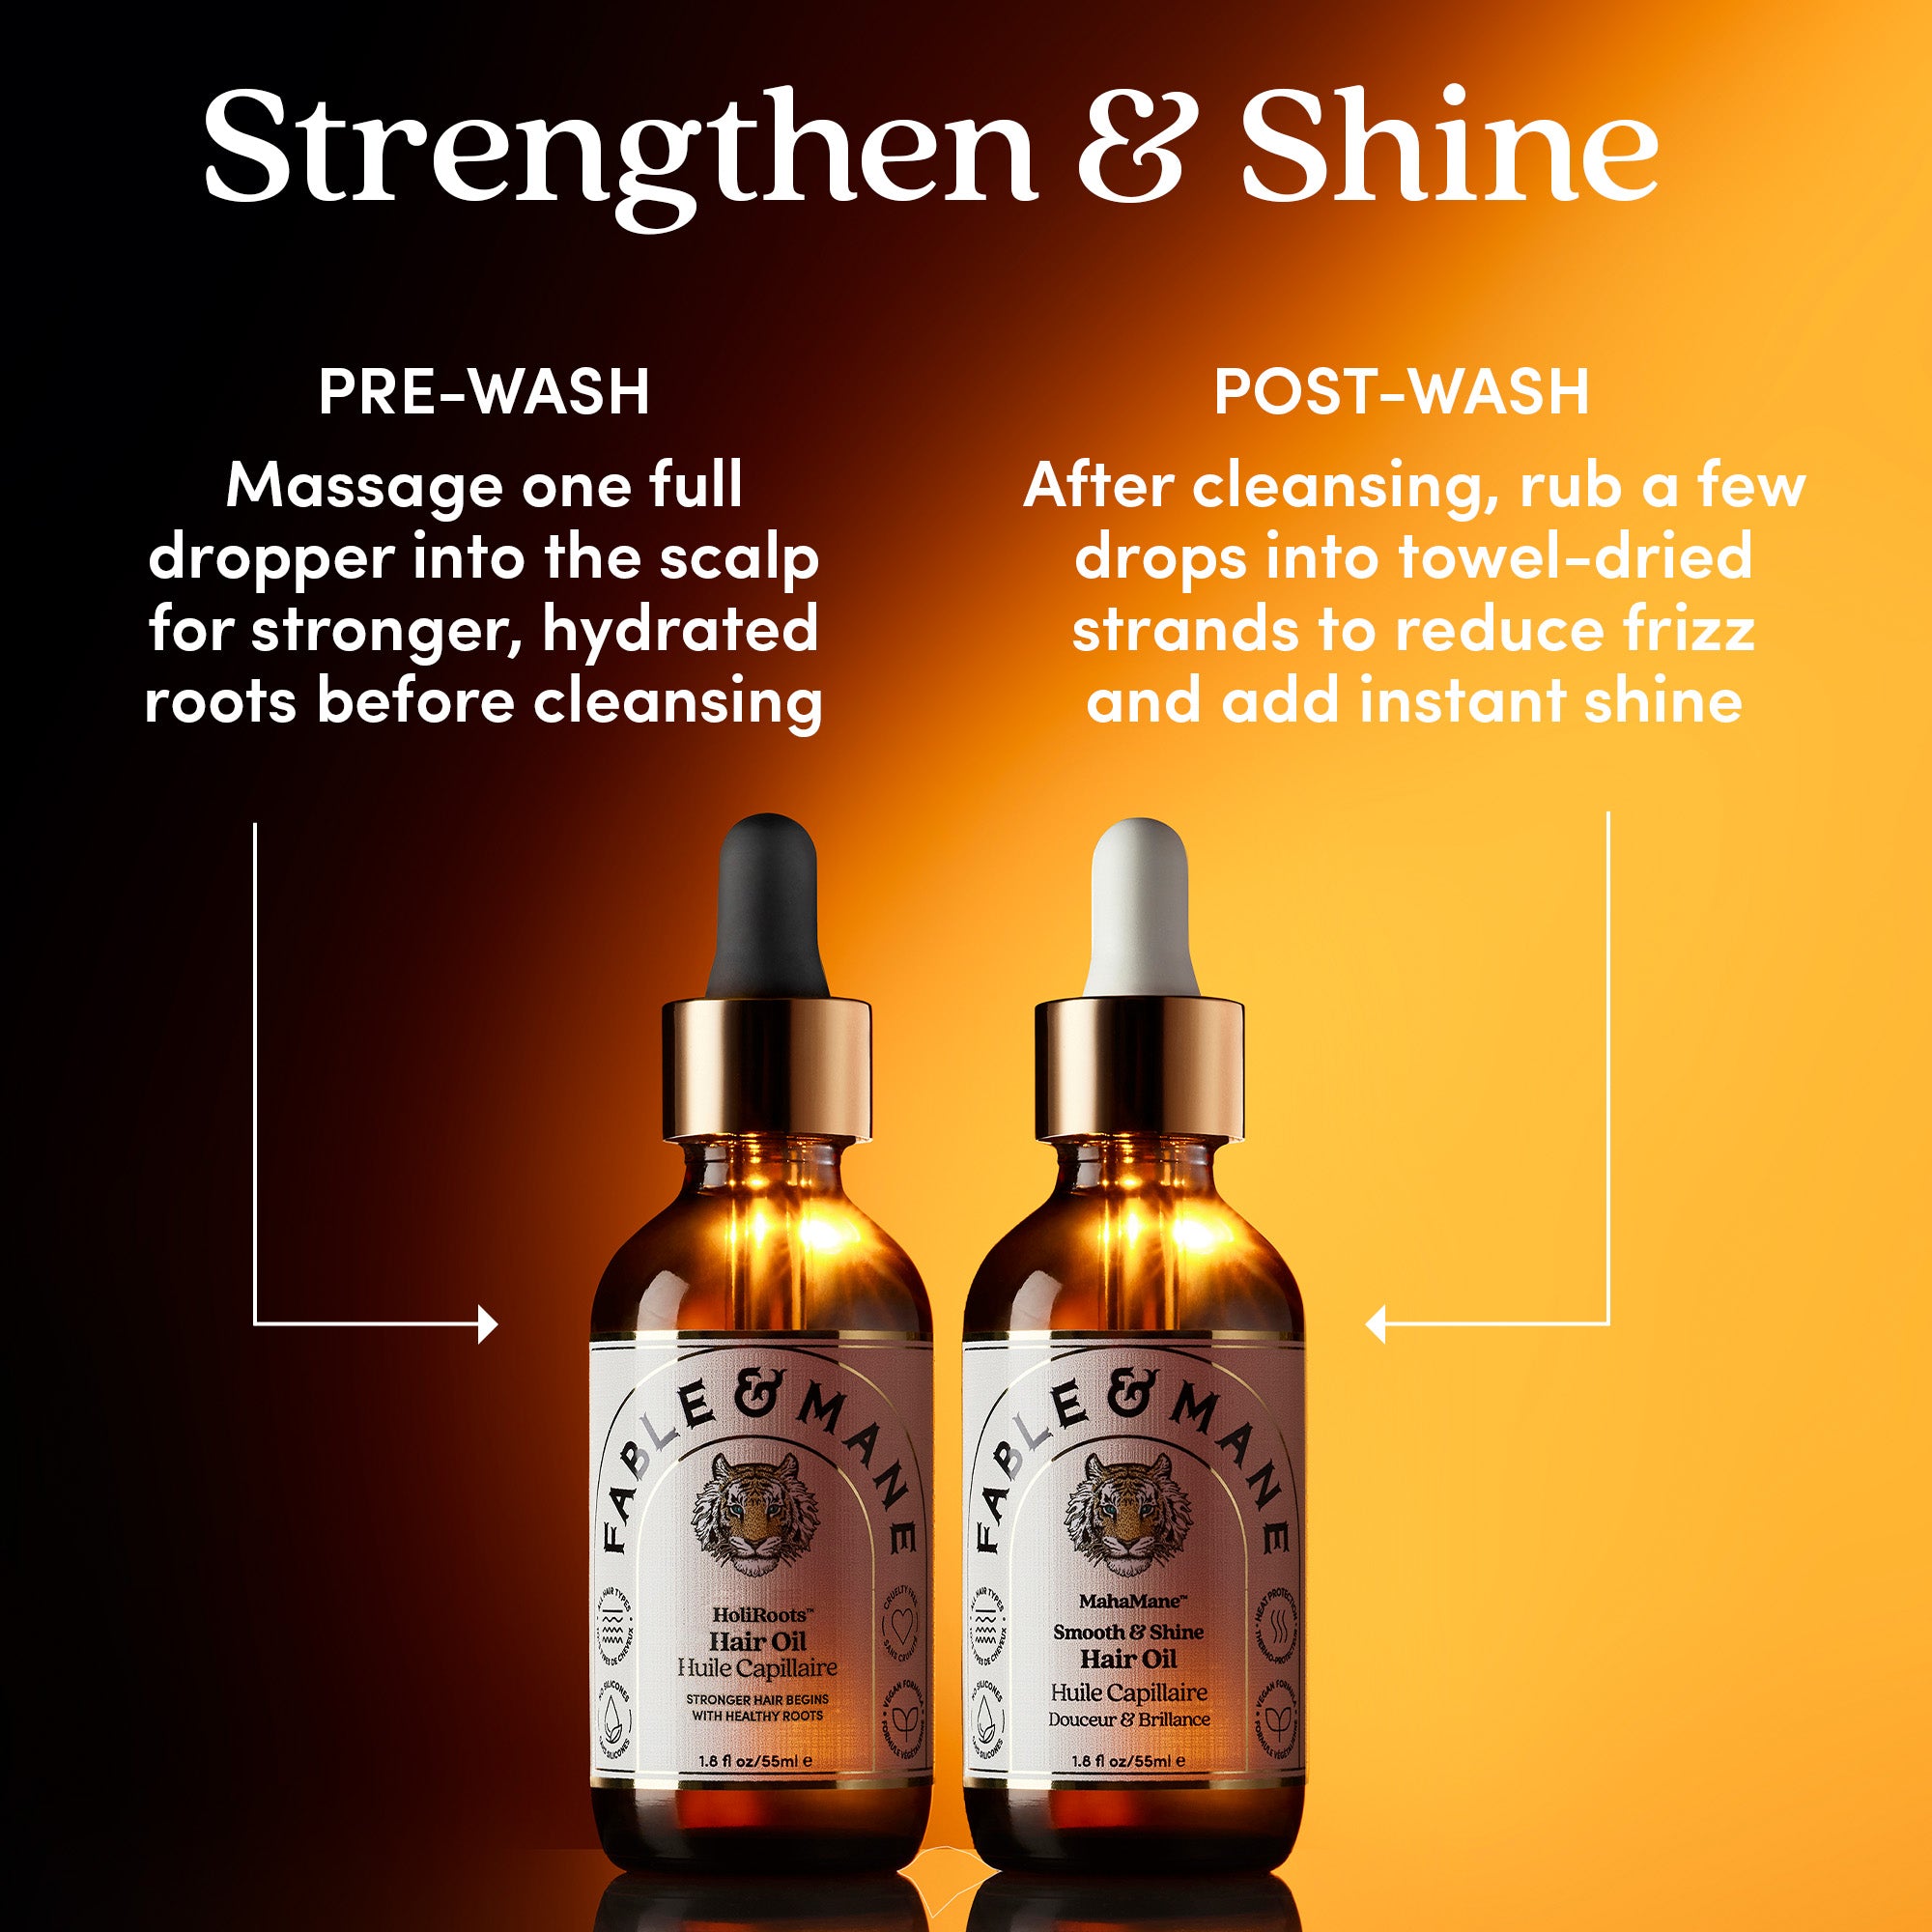 MahaMane™ Smooth & Shine Hair Oil